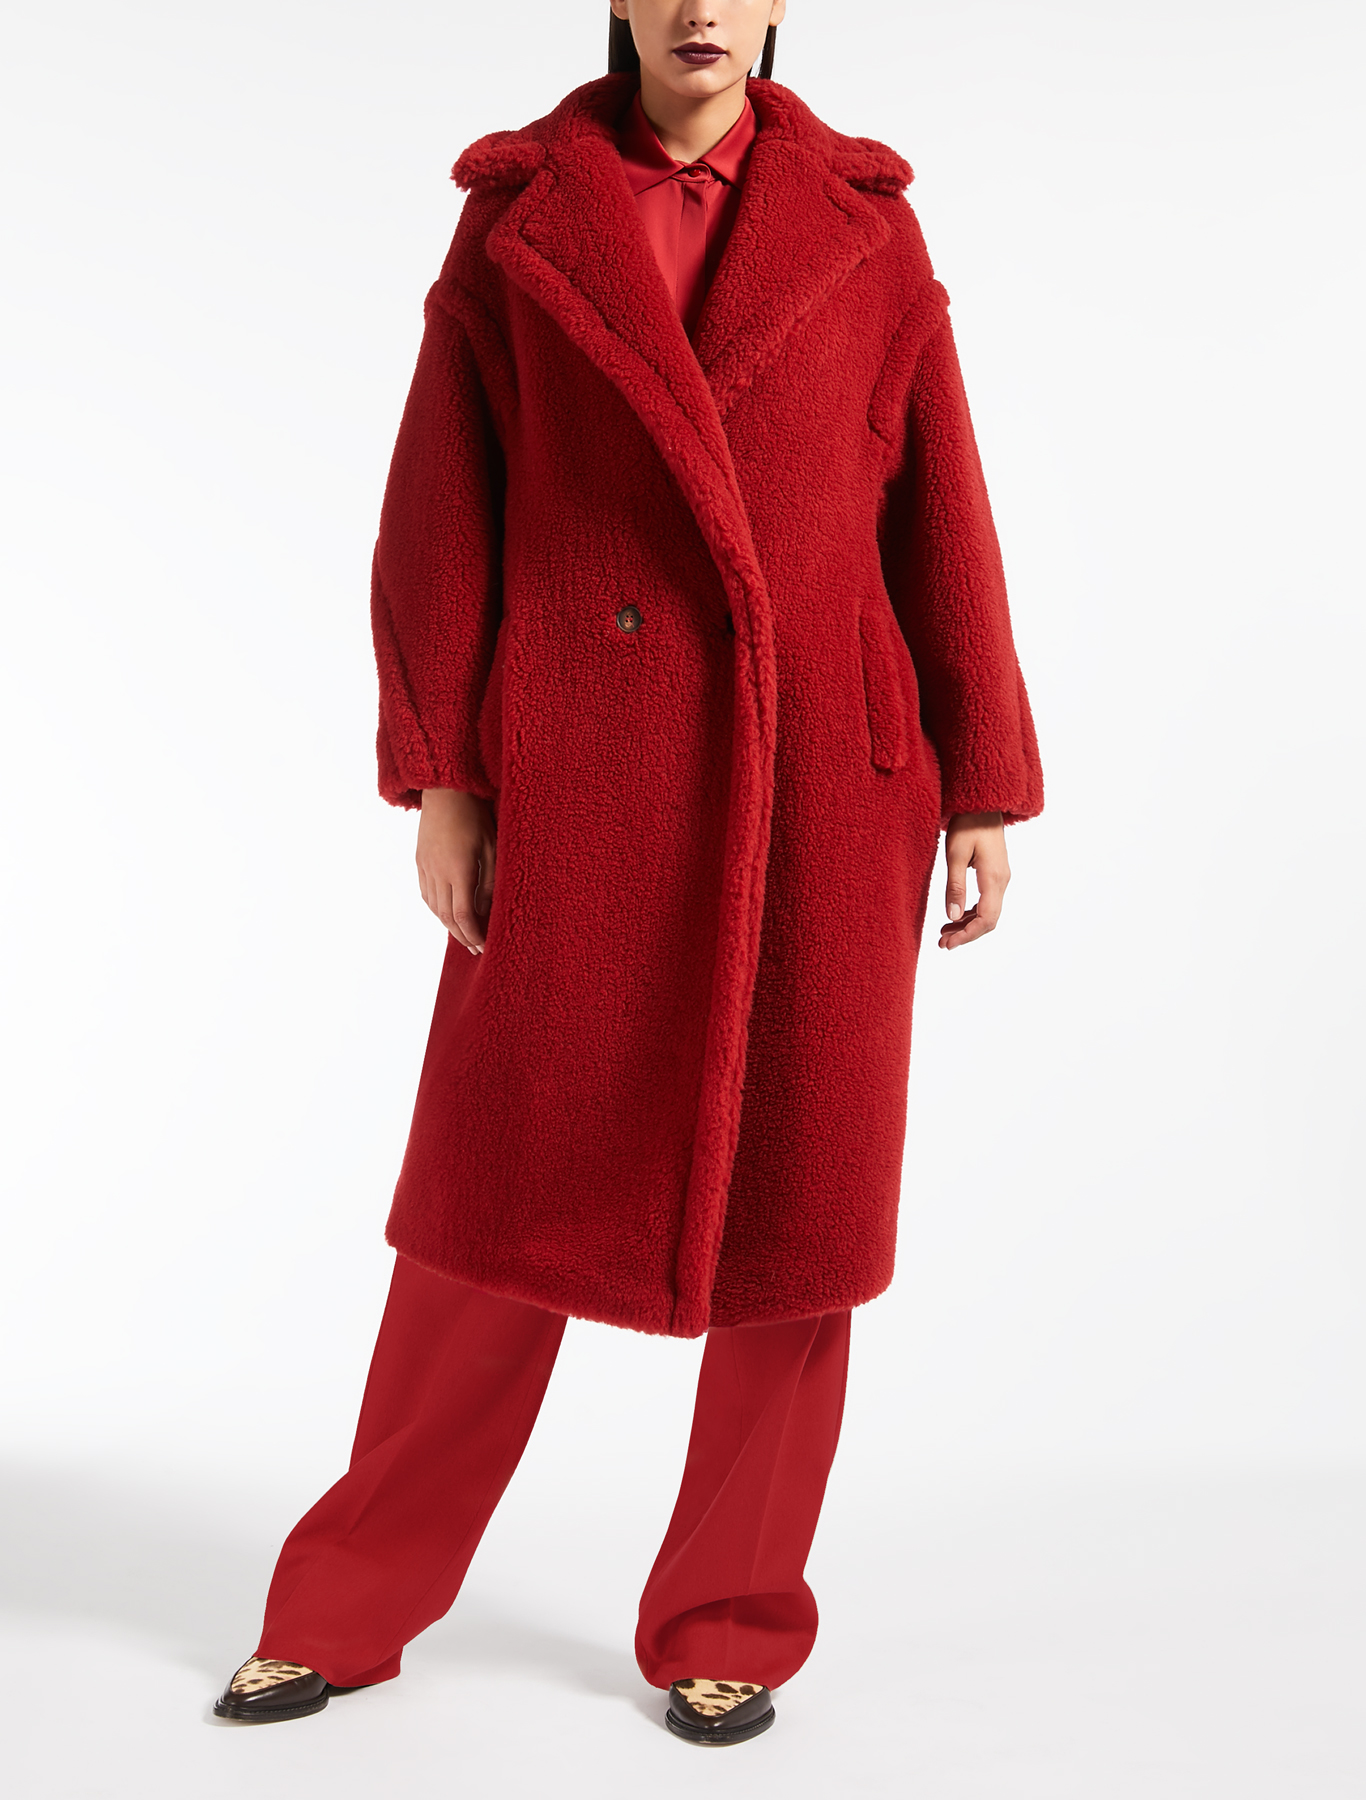 Teddy bear coat, i cappotti peluche da avere per l’inverno 2019 [FOTO]